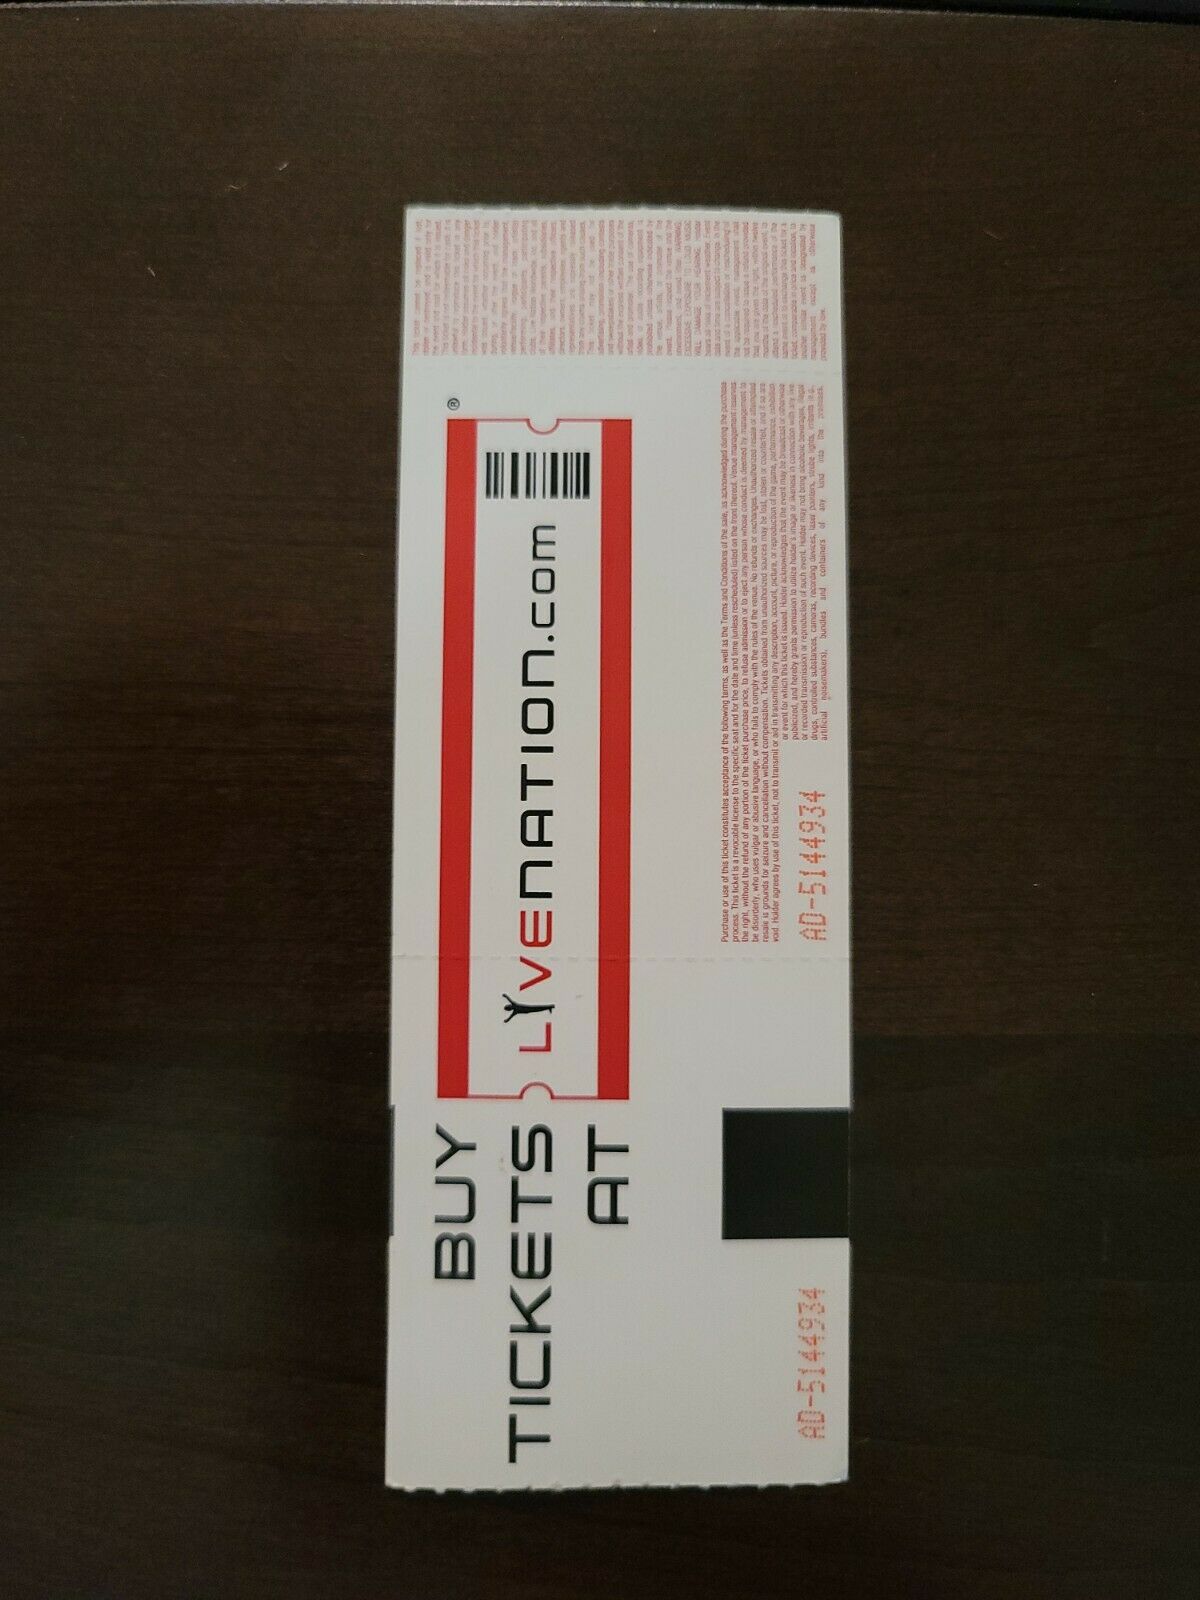 Fleetwood Mac 2014, Toronto Air Canada Centre Original Concert Ticket Stub